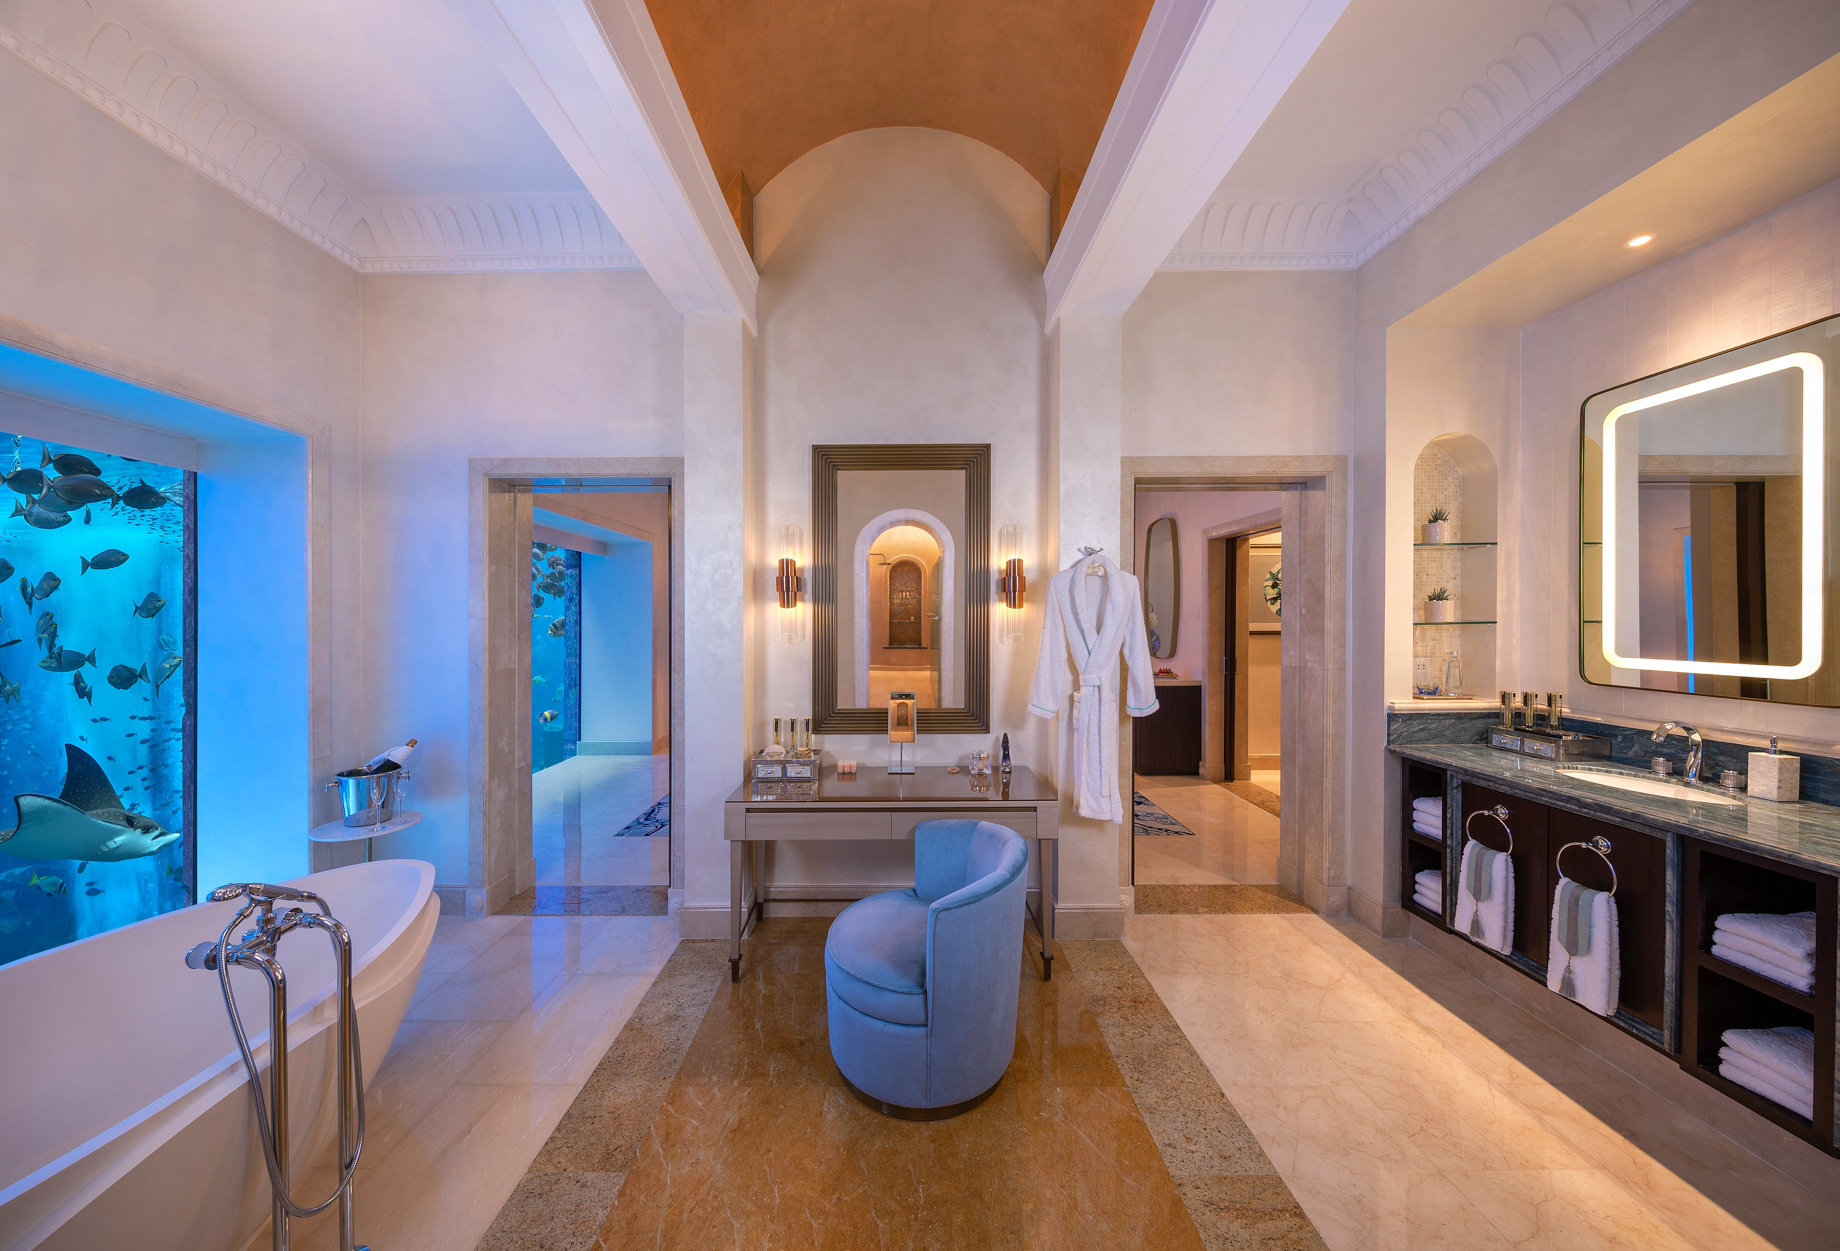 Atlantis The Palm Resort – Crescent Rd, Dubai, UAE – Underwater Suite Bathroom